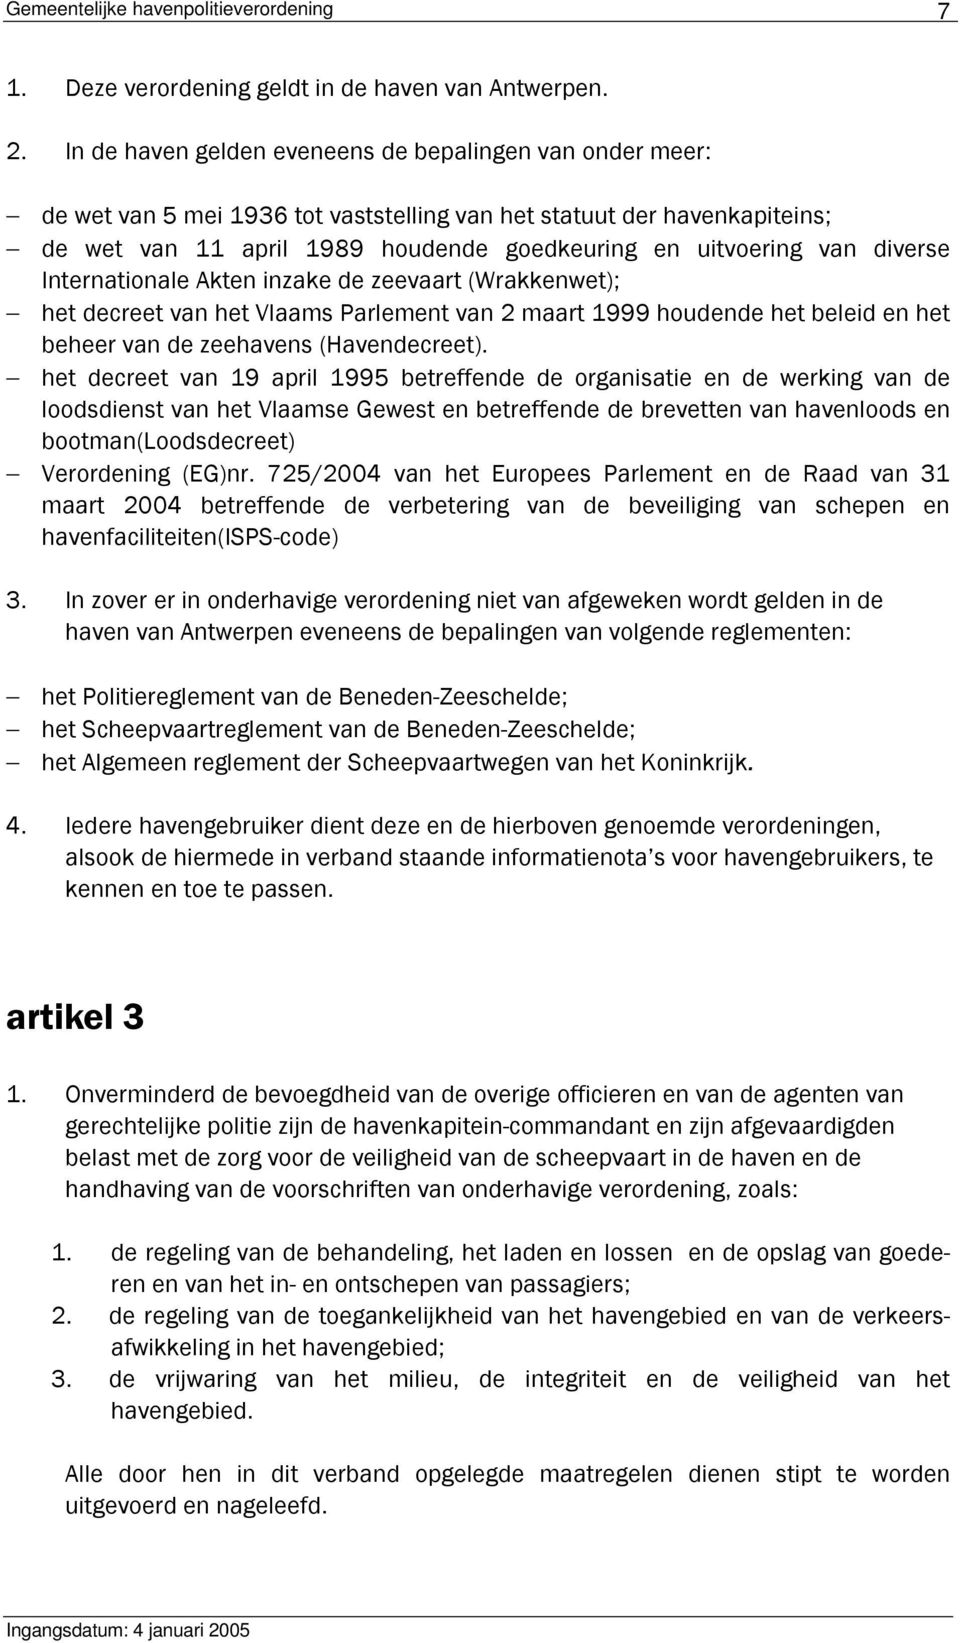 diverse Internationale Akten inzake de zeevaart (Wrakkenwet); het decreet van het Vlaams Parlement van 2 maart 1999 houdende het beleid en het beheer van de zeehavens (Havendecreet).